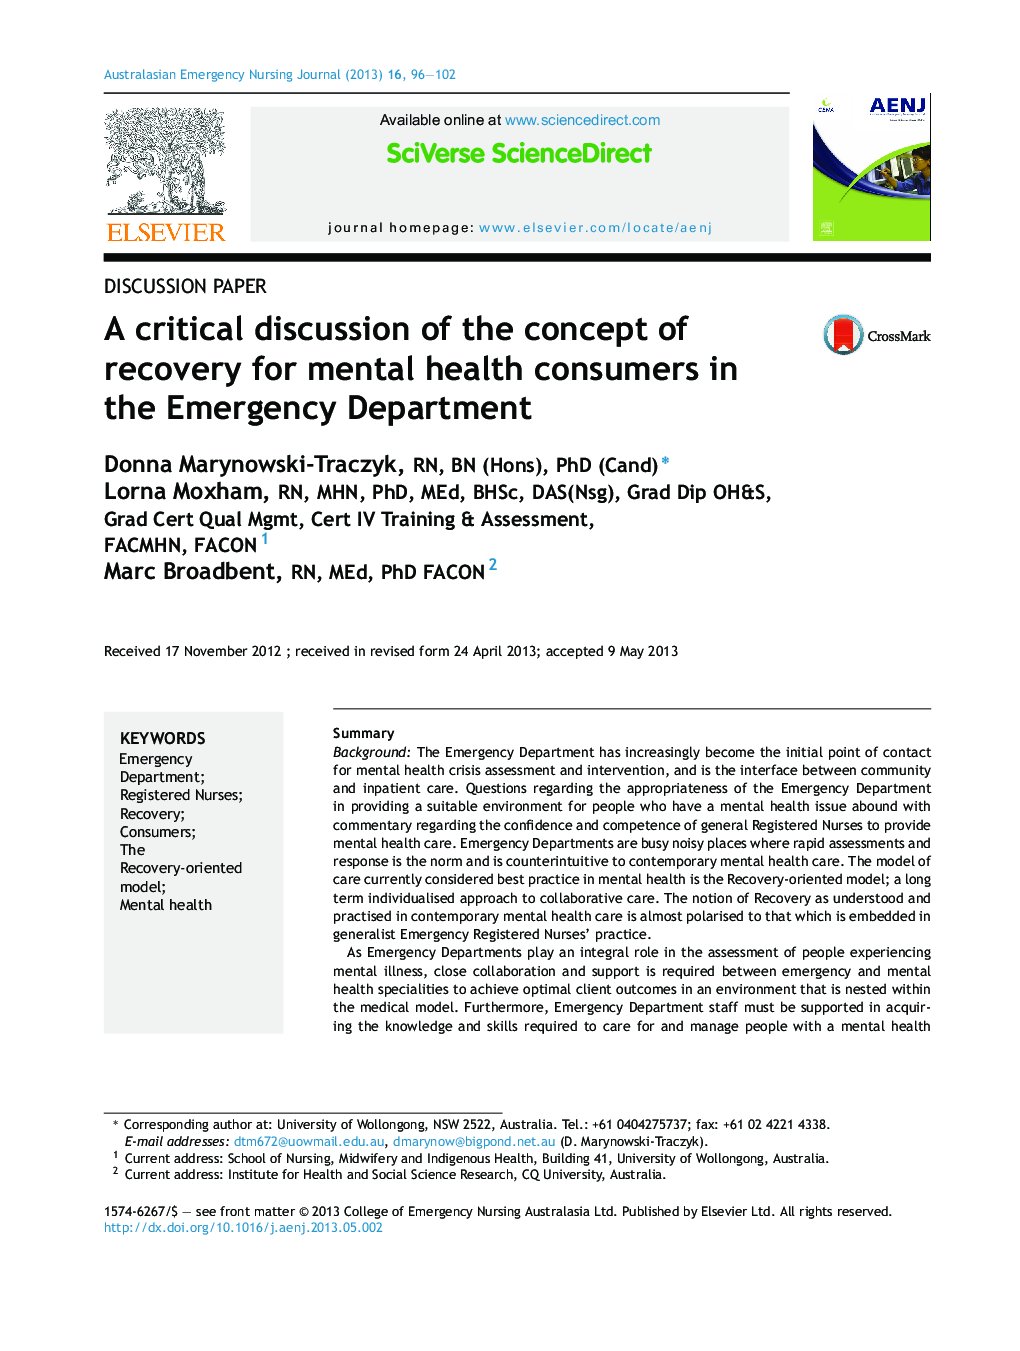 بحث مهم در مورد مفهوم بهبود برای مصرف کنندگان بهداشت روانی در بخش اورژانس